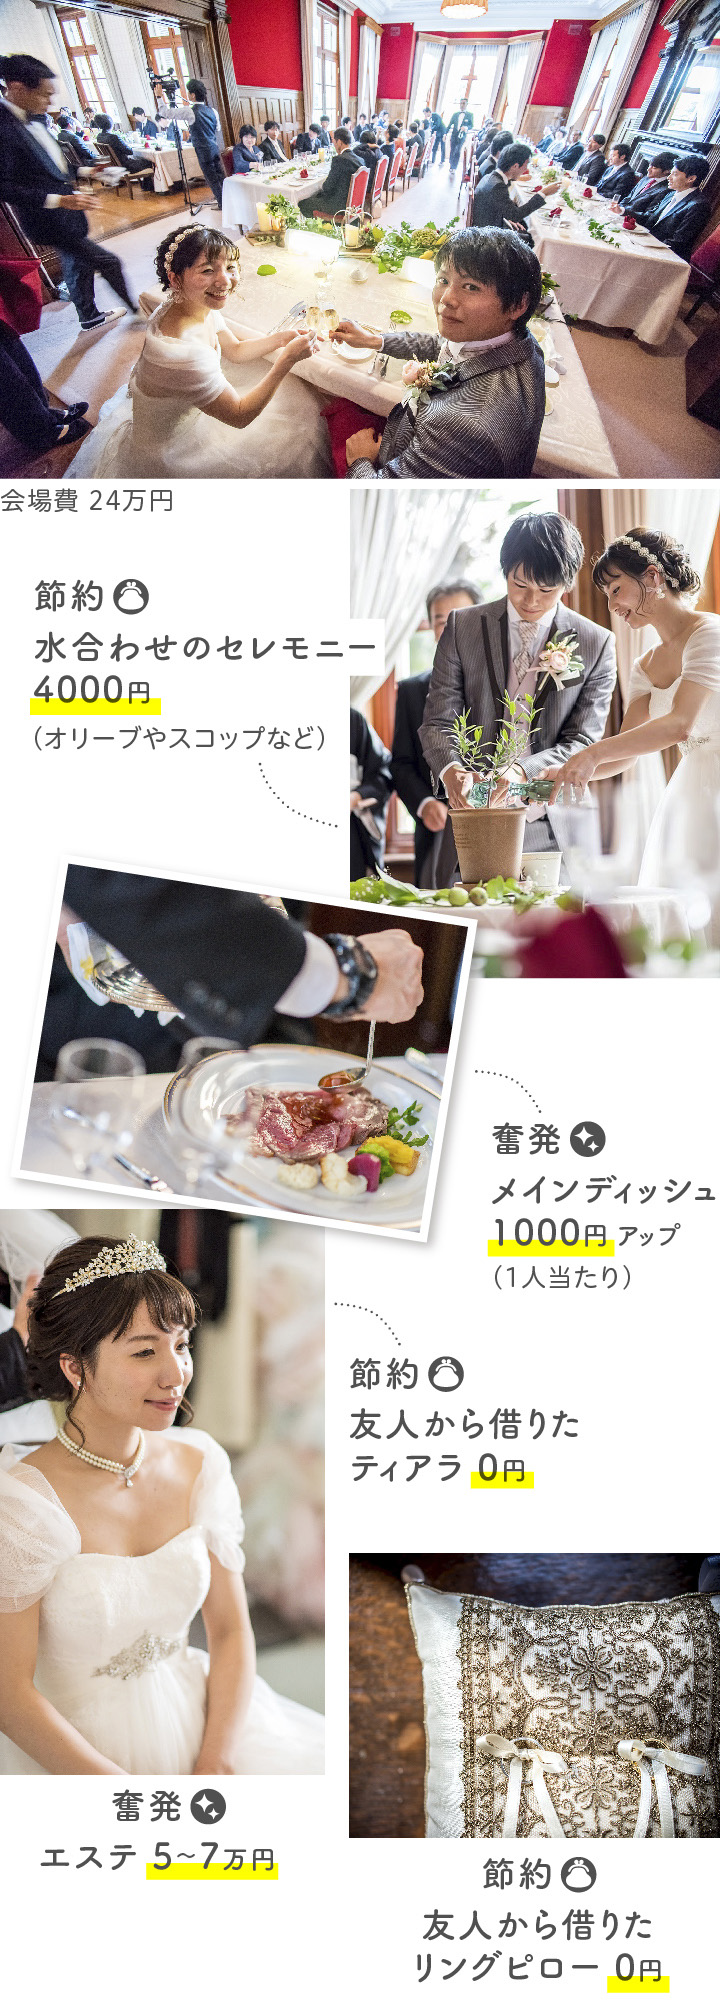 一 万 円 結婚 式